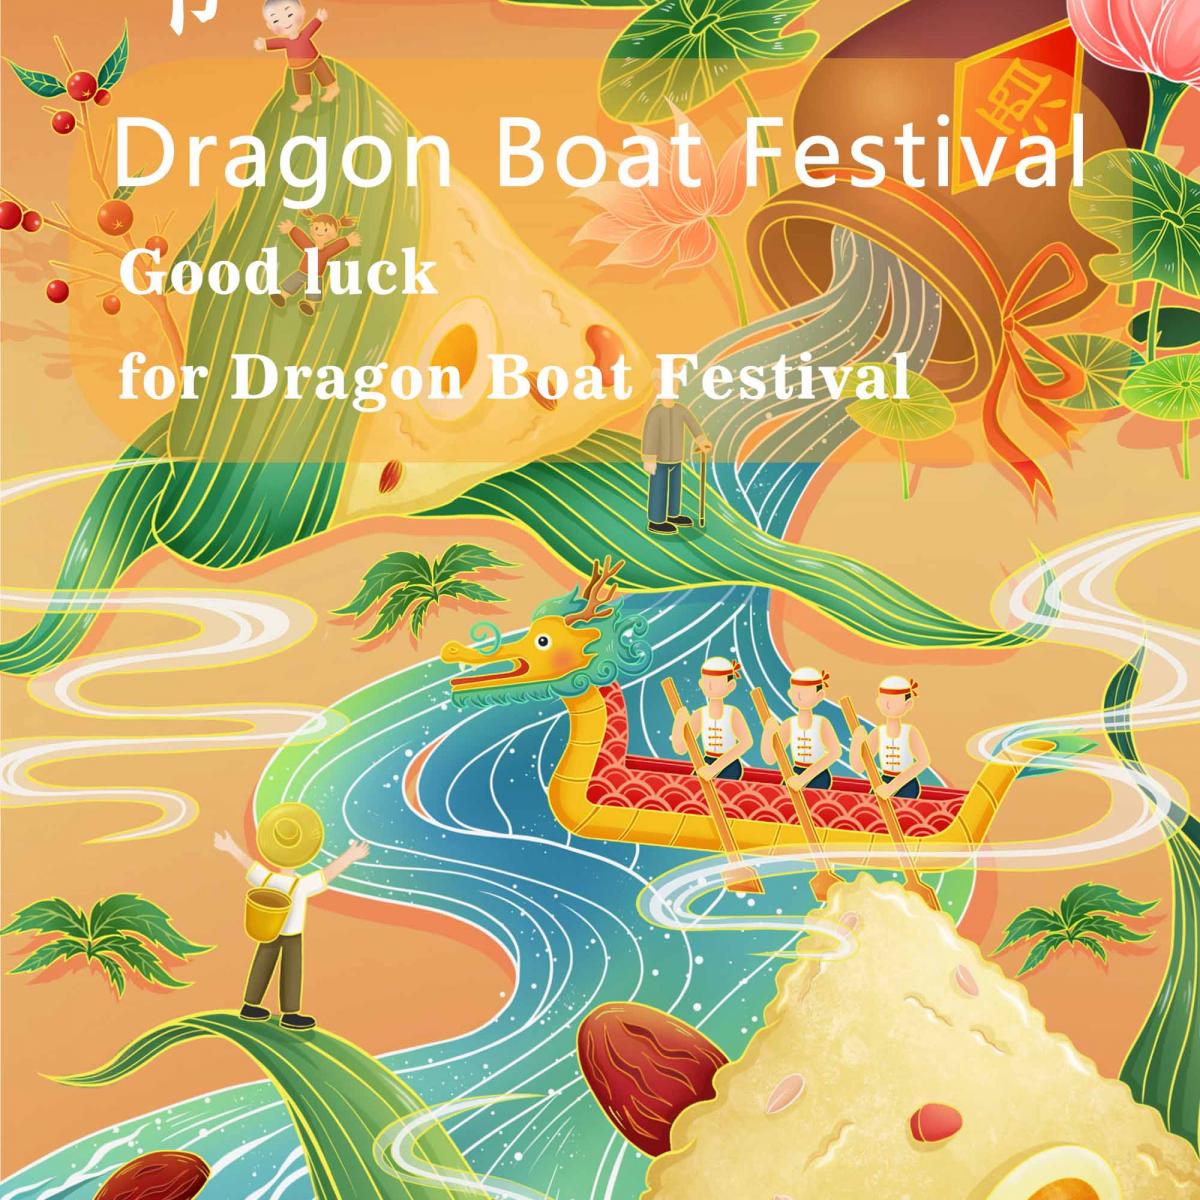 Good luck for Dragon Boat Festival